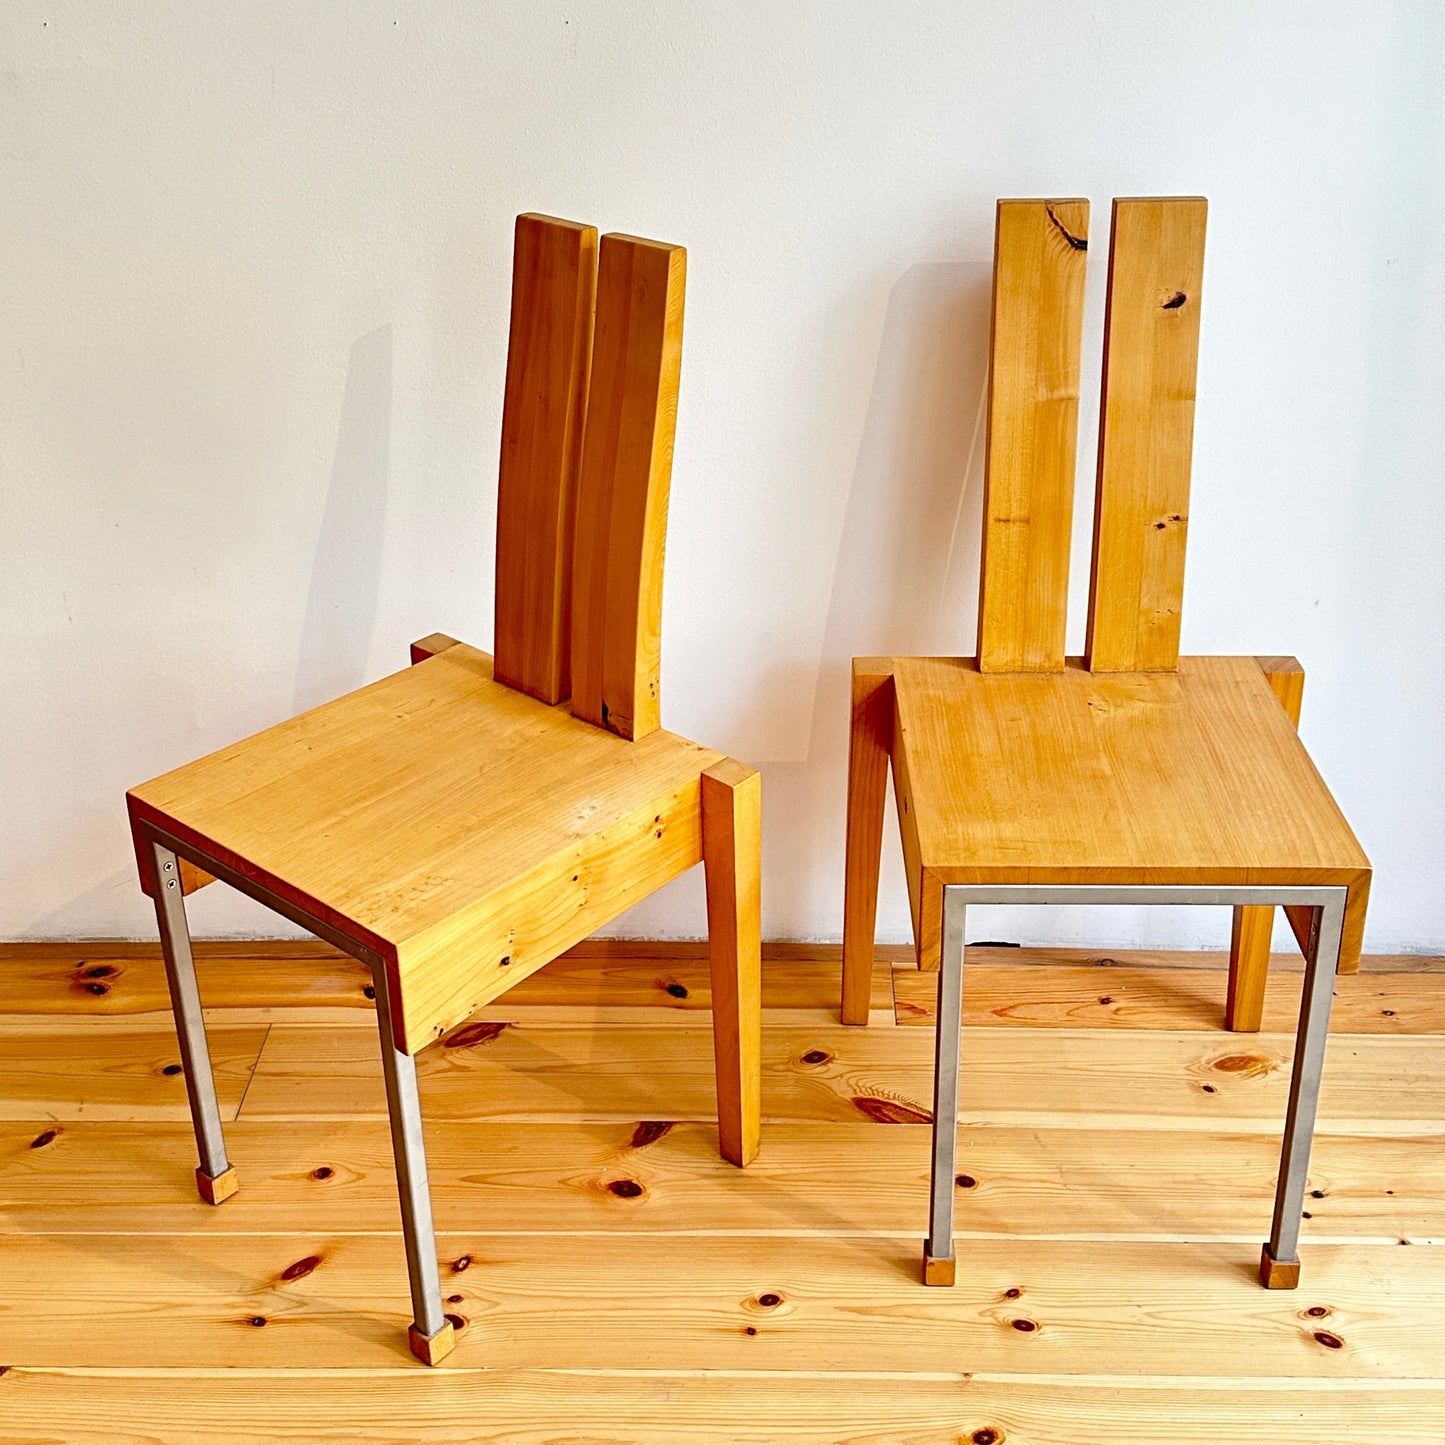 Pair of wood and metal chairs, vintage